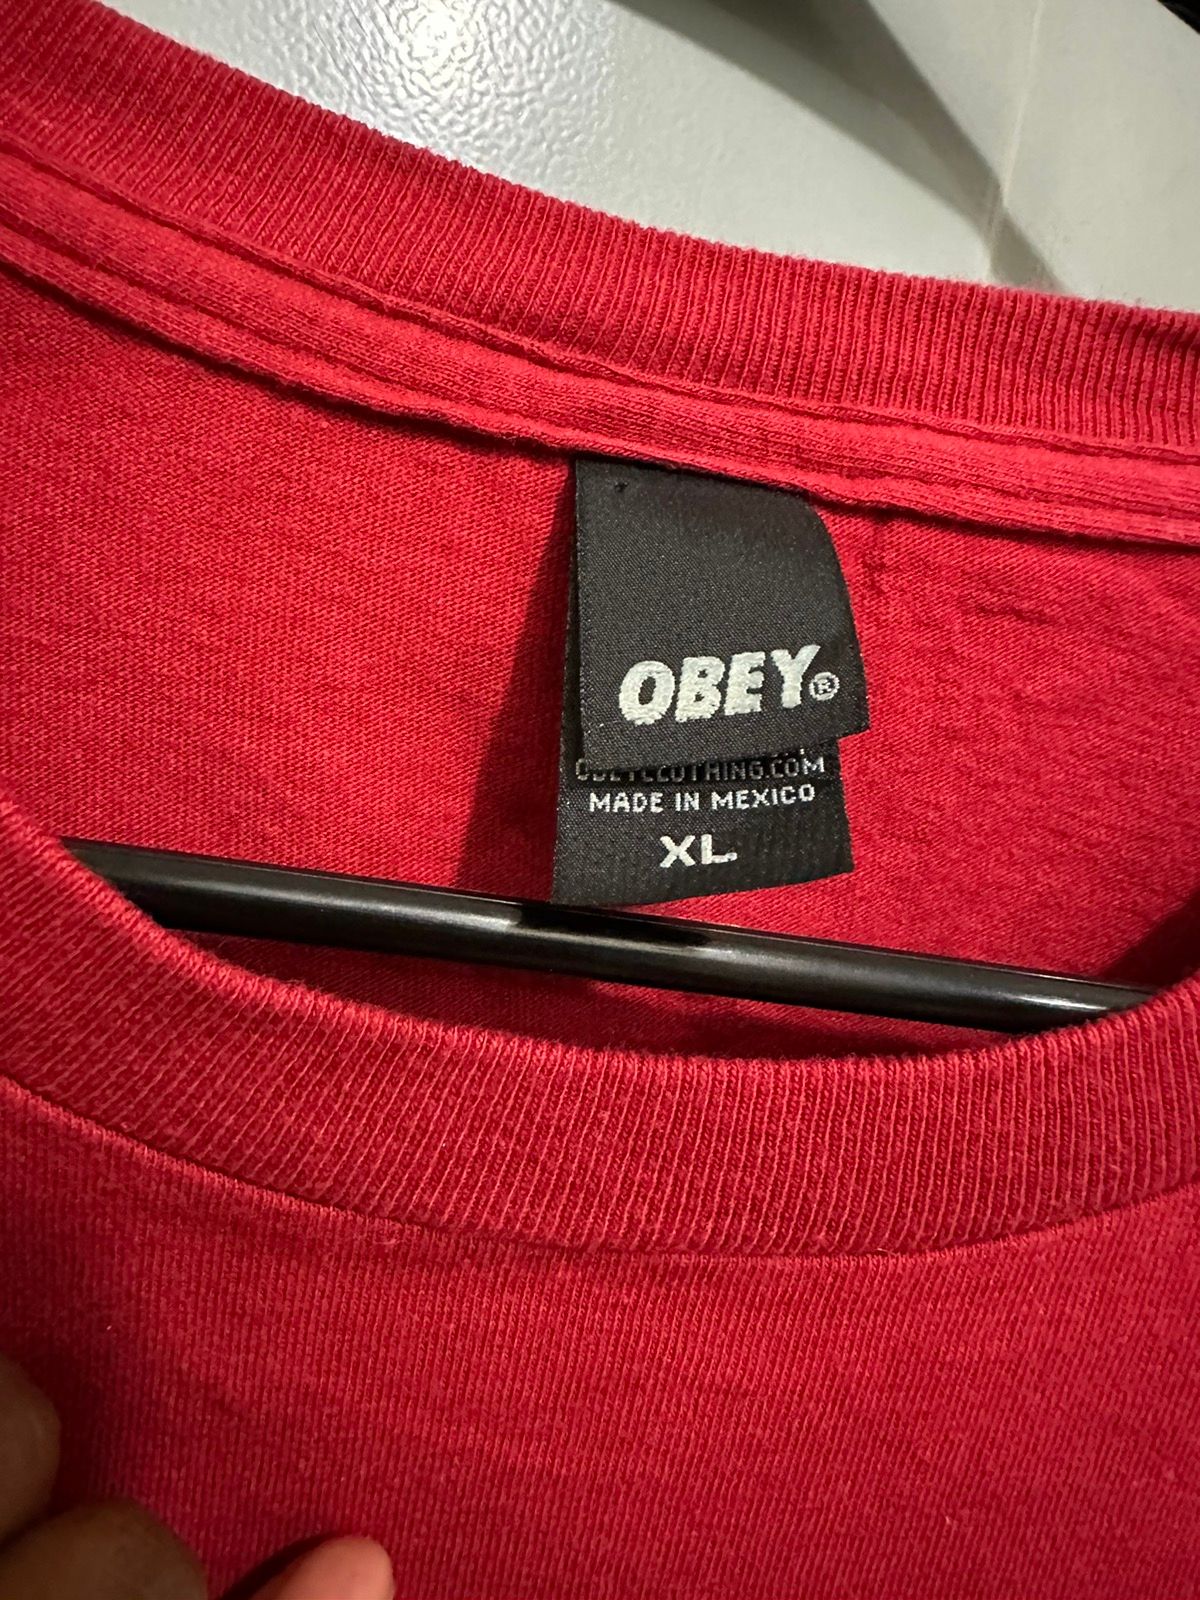 Obey Obey face logo T shirt Size US XL / EU 56 / 4 - 2 Preview